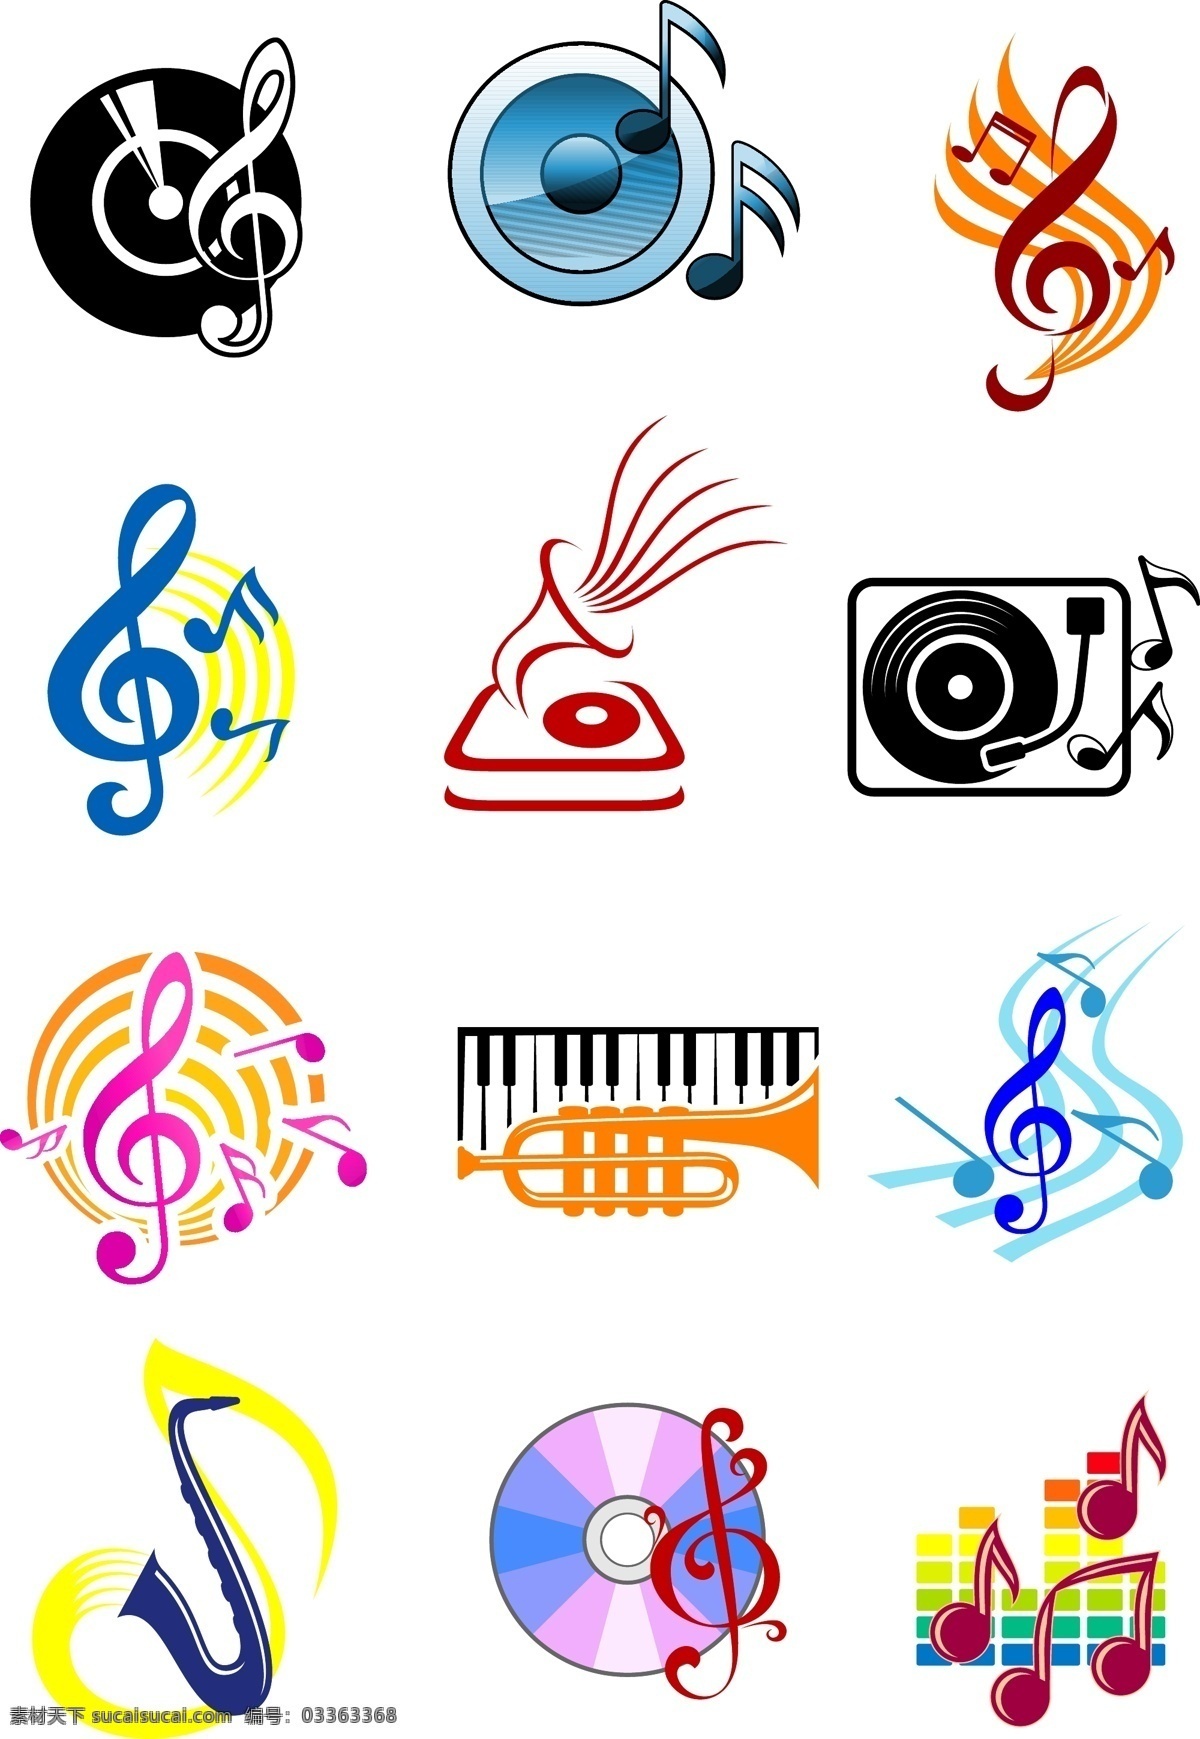 音乐 乐器 图标 矢量 音乐符号 乐符 耳机 音乐图标 音乐主题 音乐素材 影音娱乐 生活百科 矢量素材 白色